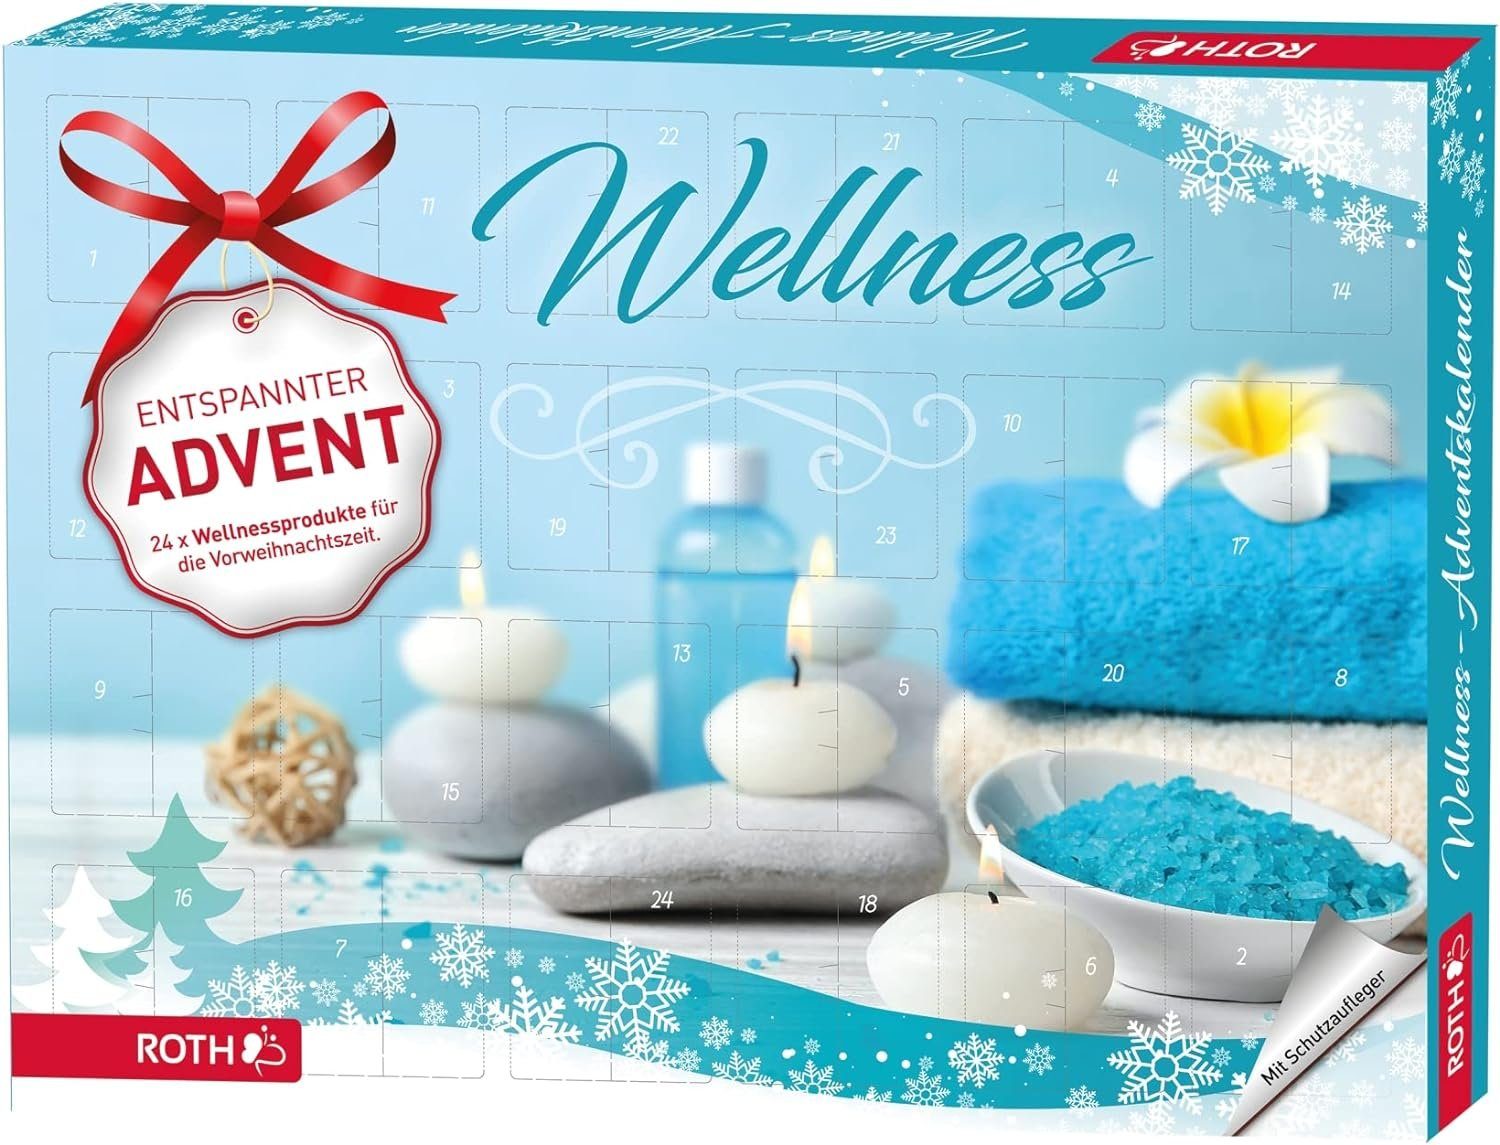 24 Dir Adventszeit Zeit' für Wellnessartikeln eine mit Nimm Adventskalender, Roth entspannte